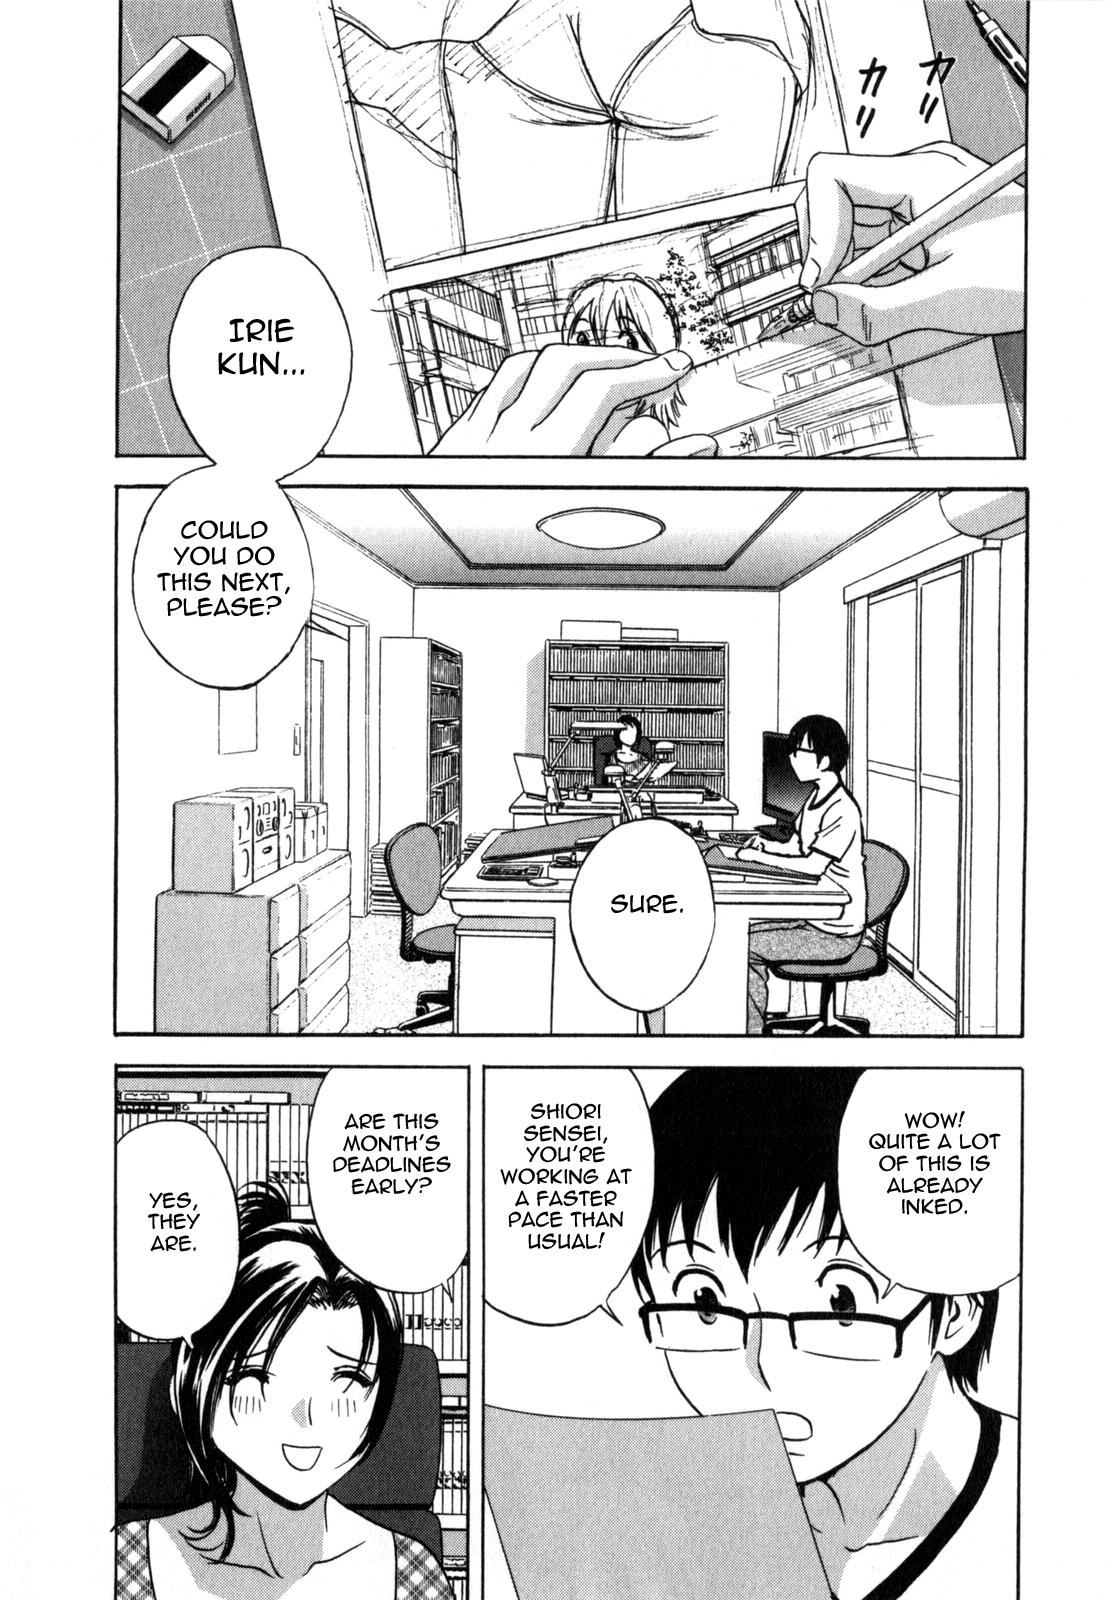 Manga no youna Hitozuma to no Hibi - Days with Married Women such as Comics. 82